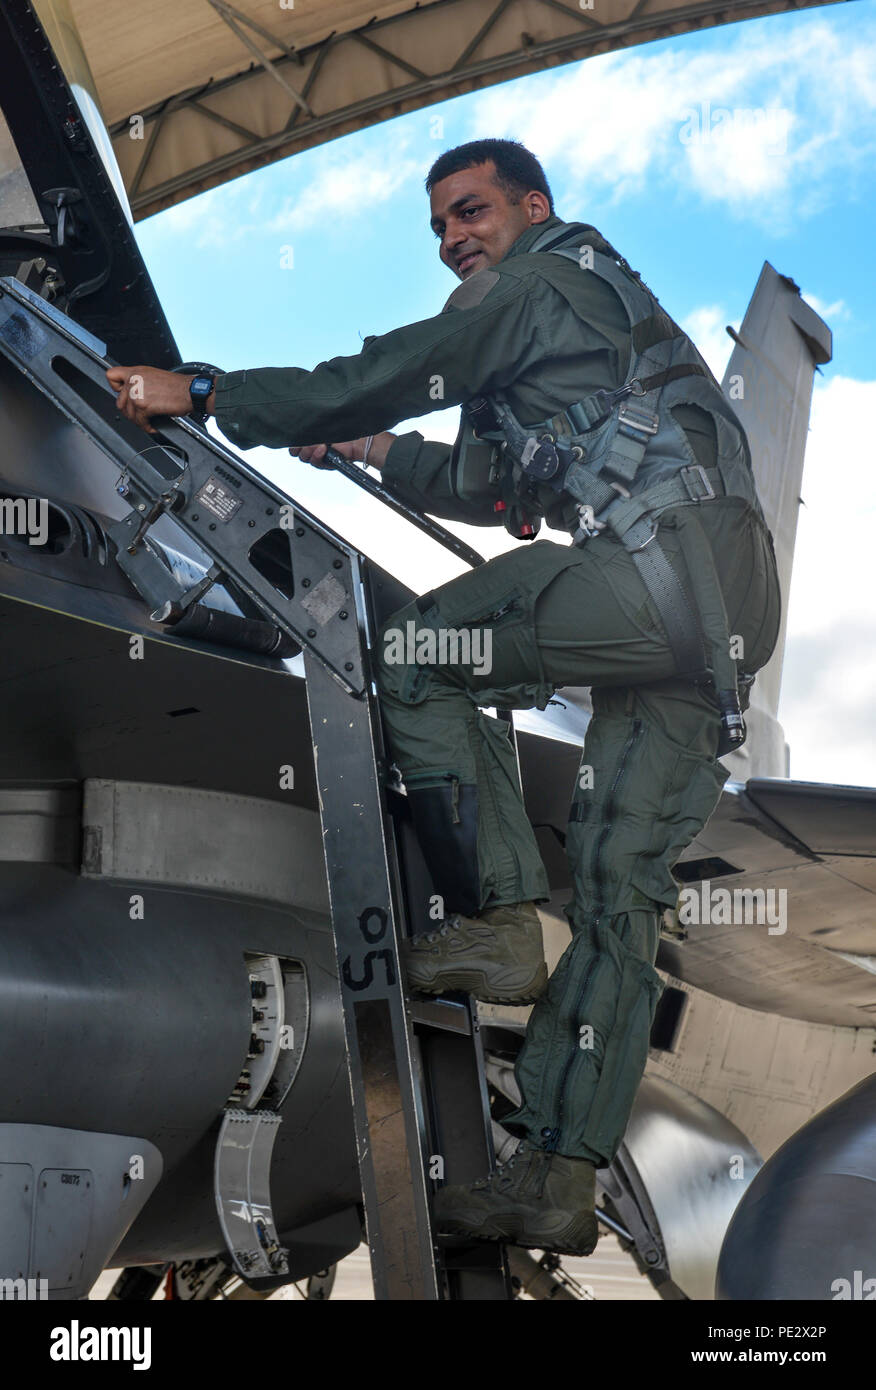 Aviador Senior Shrutit Patel, 33º grupo de mantenimiento Mantenimiento analista, sube a bordo de un F-16 Falcon combate asignados a la Guardia Nacional Aérea de Carolina del Sur la 169ª Ala de caza para un vuelo de incentivos en la base de la Fuerza Aérea de Eglin, Florida, el 17 de septiembre de 2015. El 169FW pasó dos semanas realizando capacitación en integración de quinta generación con el 58º Escuadrón de Combate. (Ee.Uu. La Fuerza Aérea Foto/Aviador Senior Andrea Posey) Foto de stock